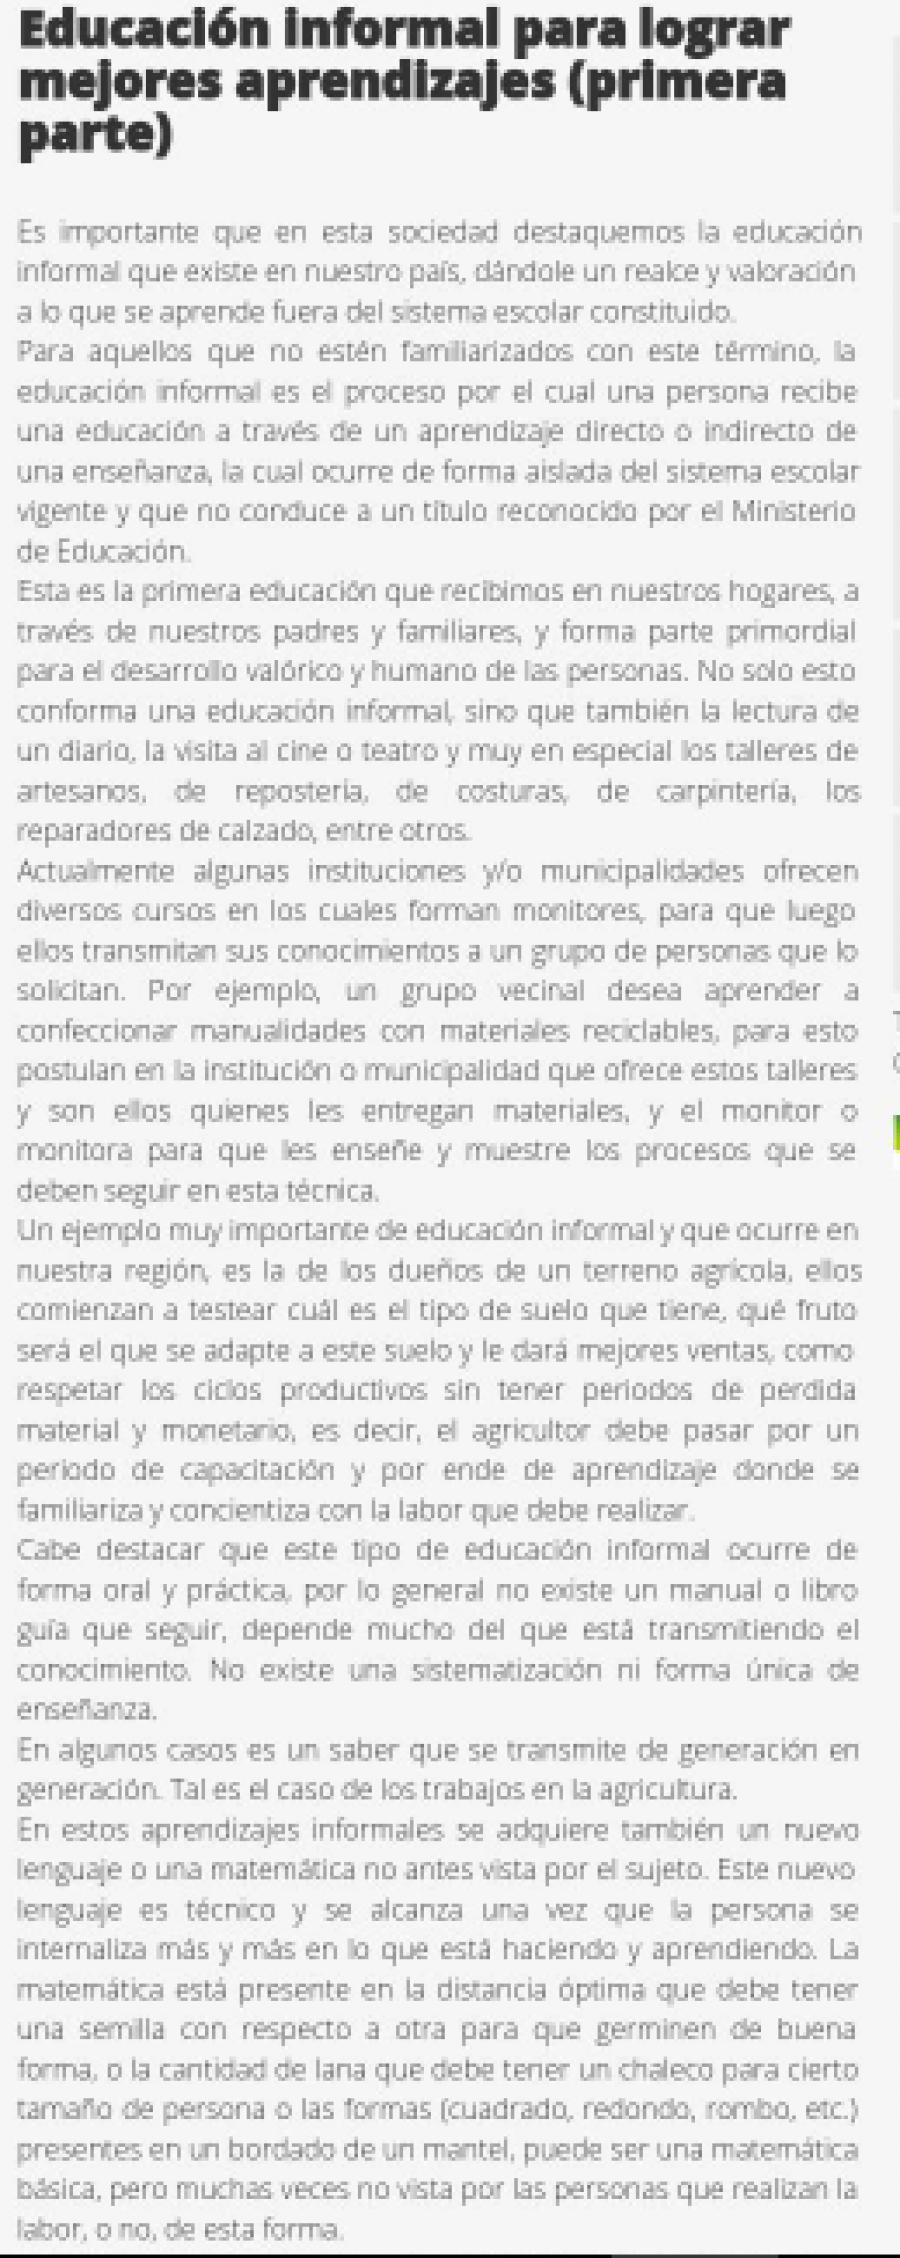 28 de junio en Diario El Heraldo: “Educación informal para lograr mejores aprendizajes (primera parte)”